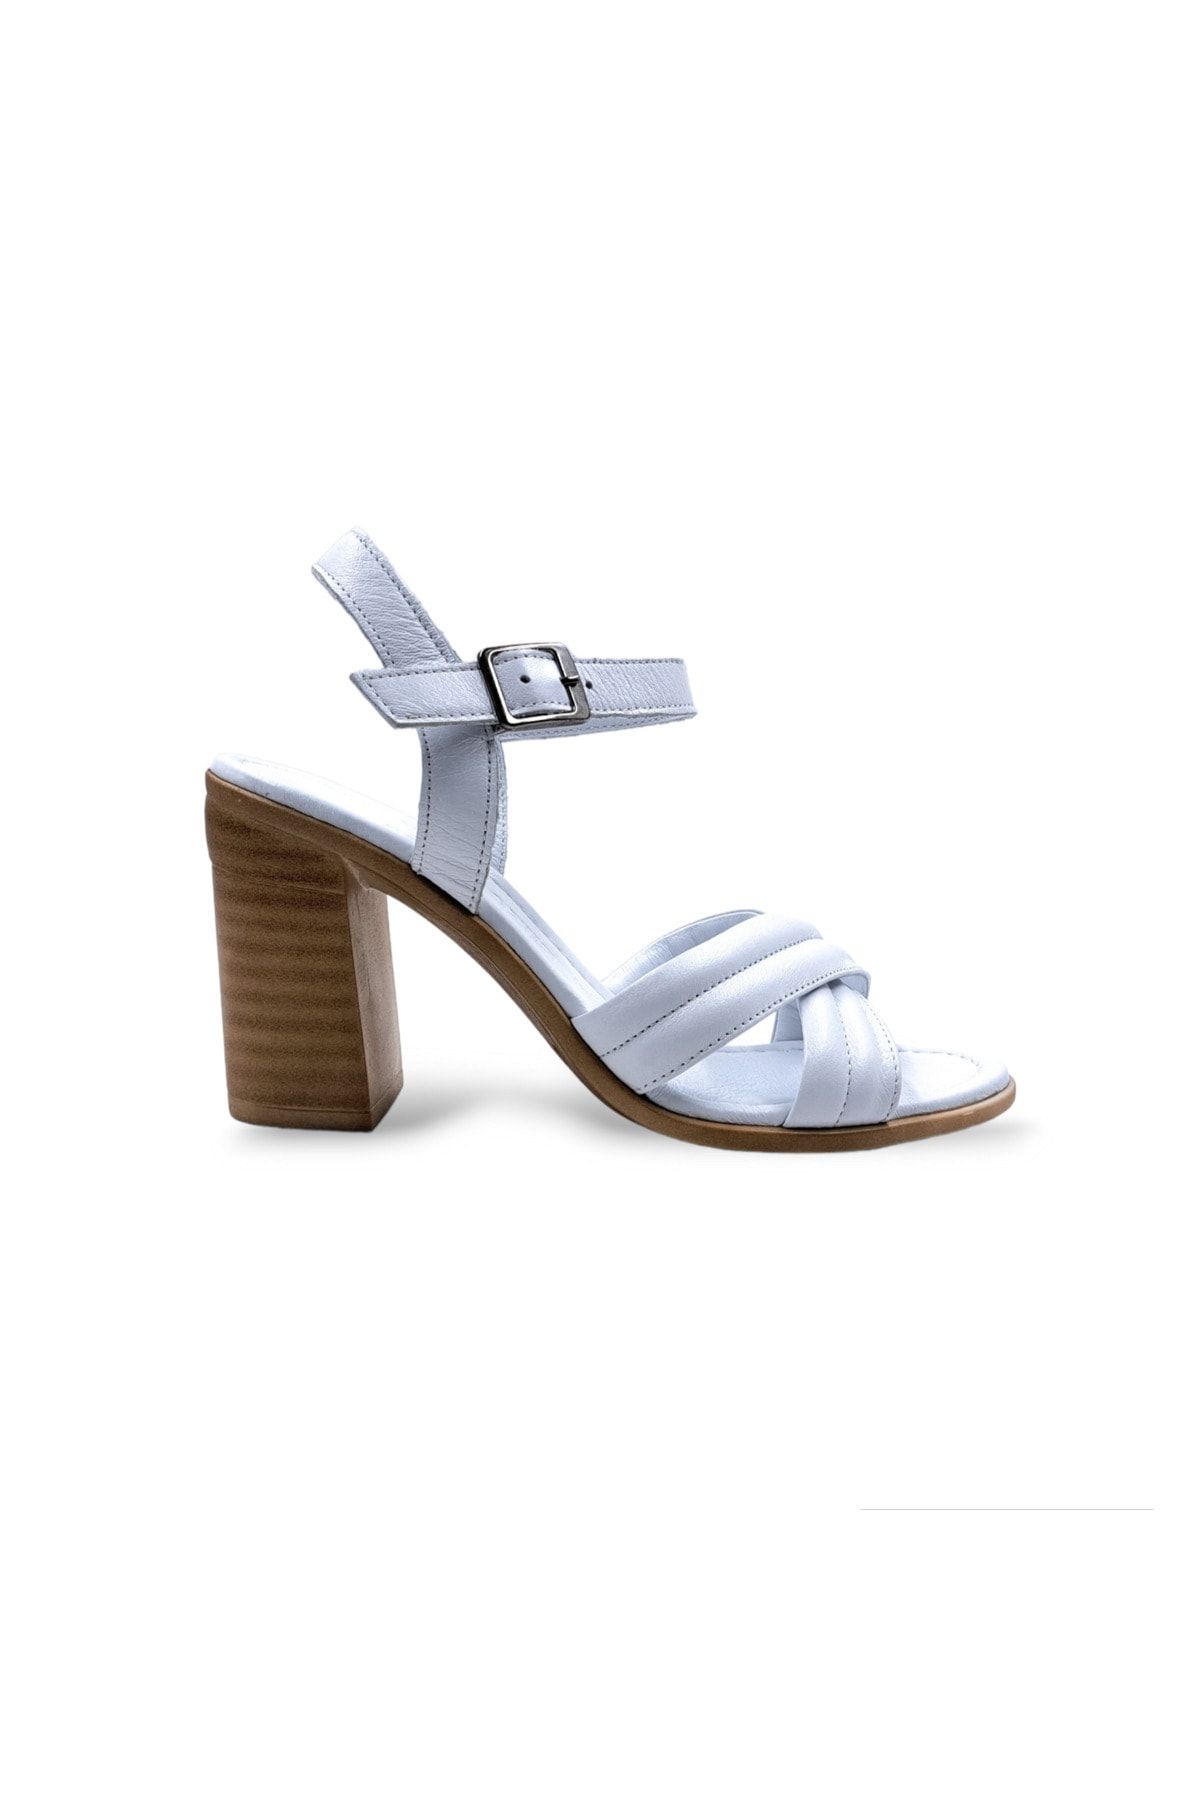 Bulldozer Hakiki Deri Kadın Topuklu Beyaz Sandalet Ayakkabı